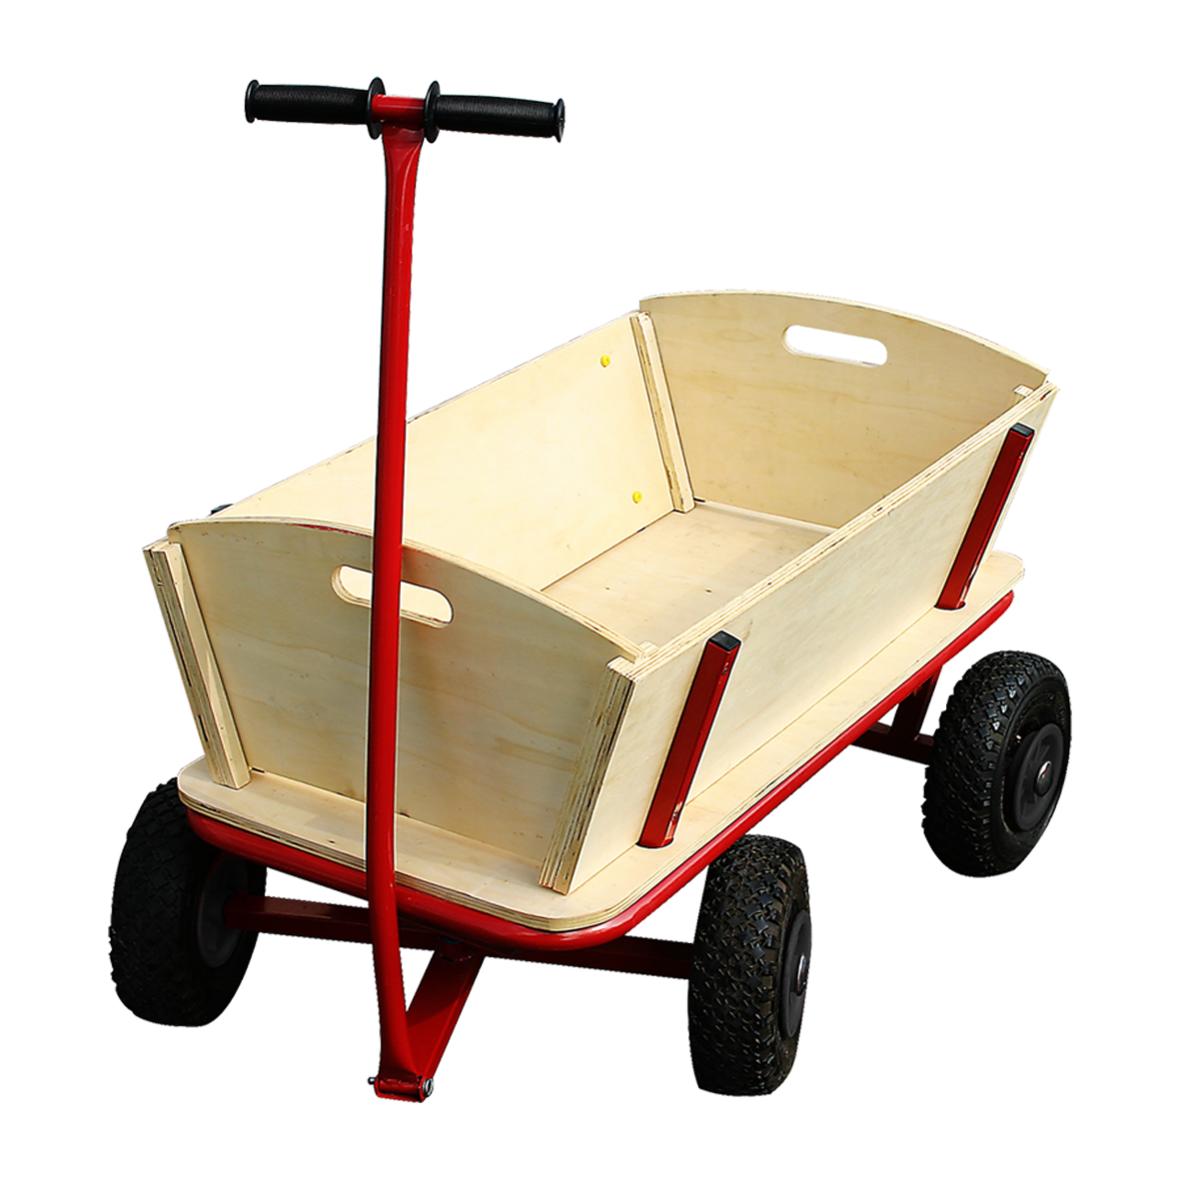 Grand chariot à main en panneau MDF avec peinture rouge, cadre en tige de fer de 25 mm et poignée revêtue de caoutchouc - Bignan - Zaprinta France